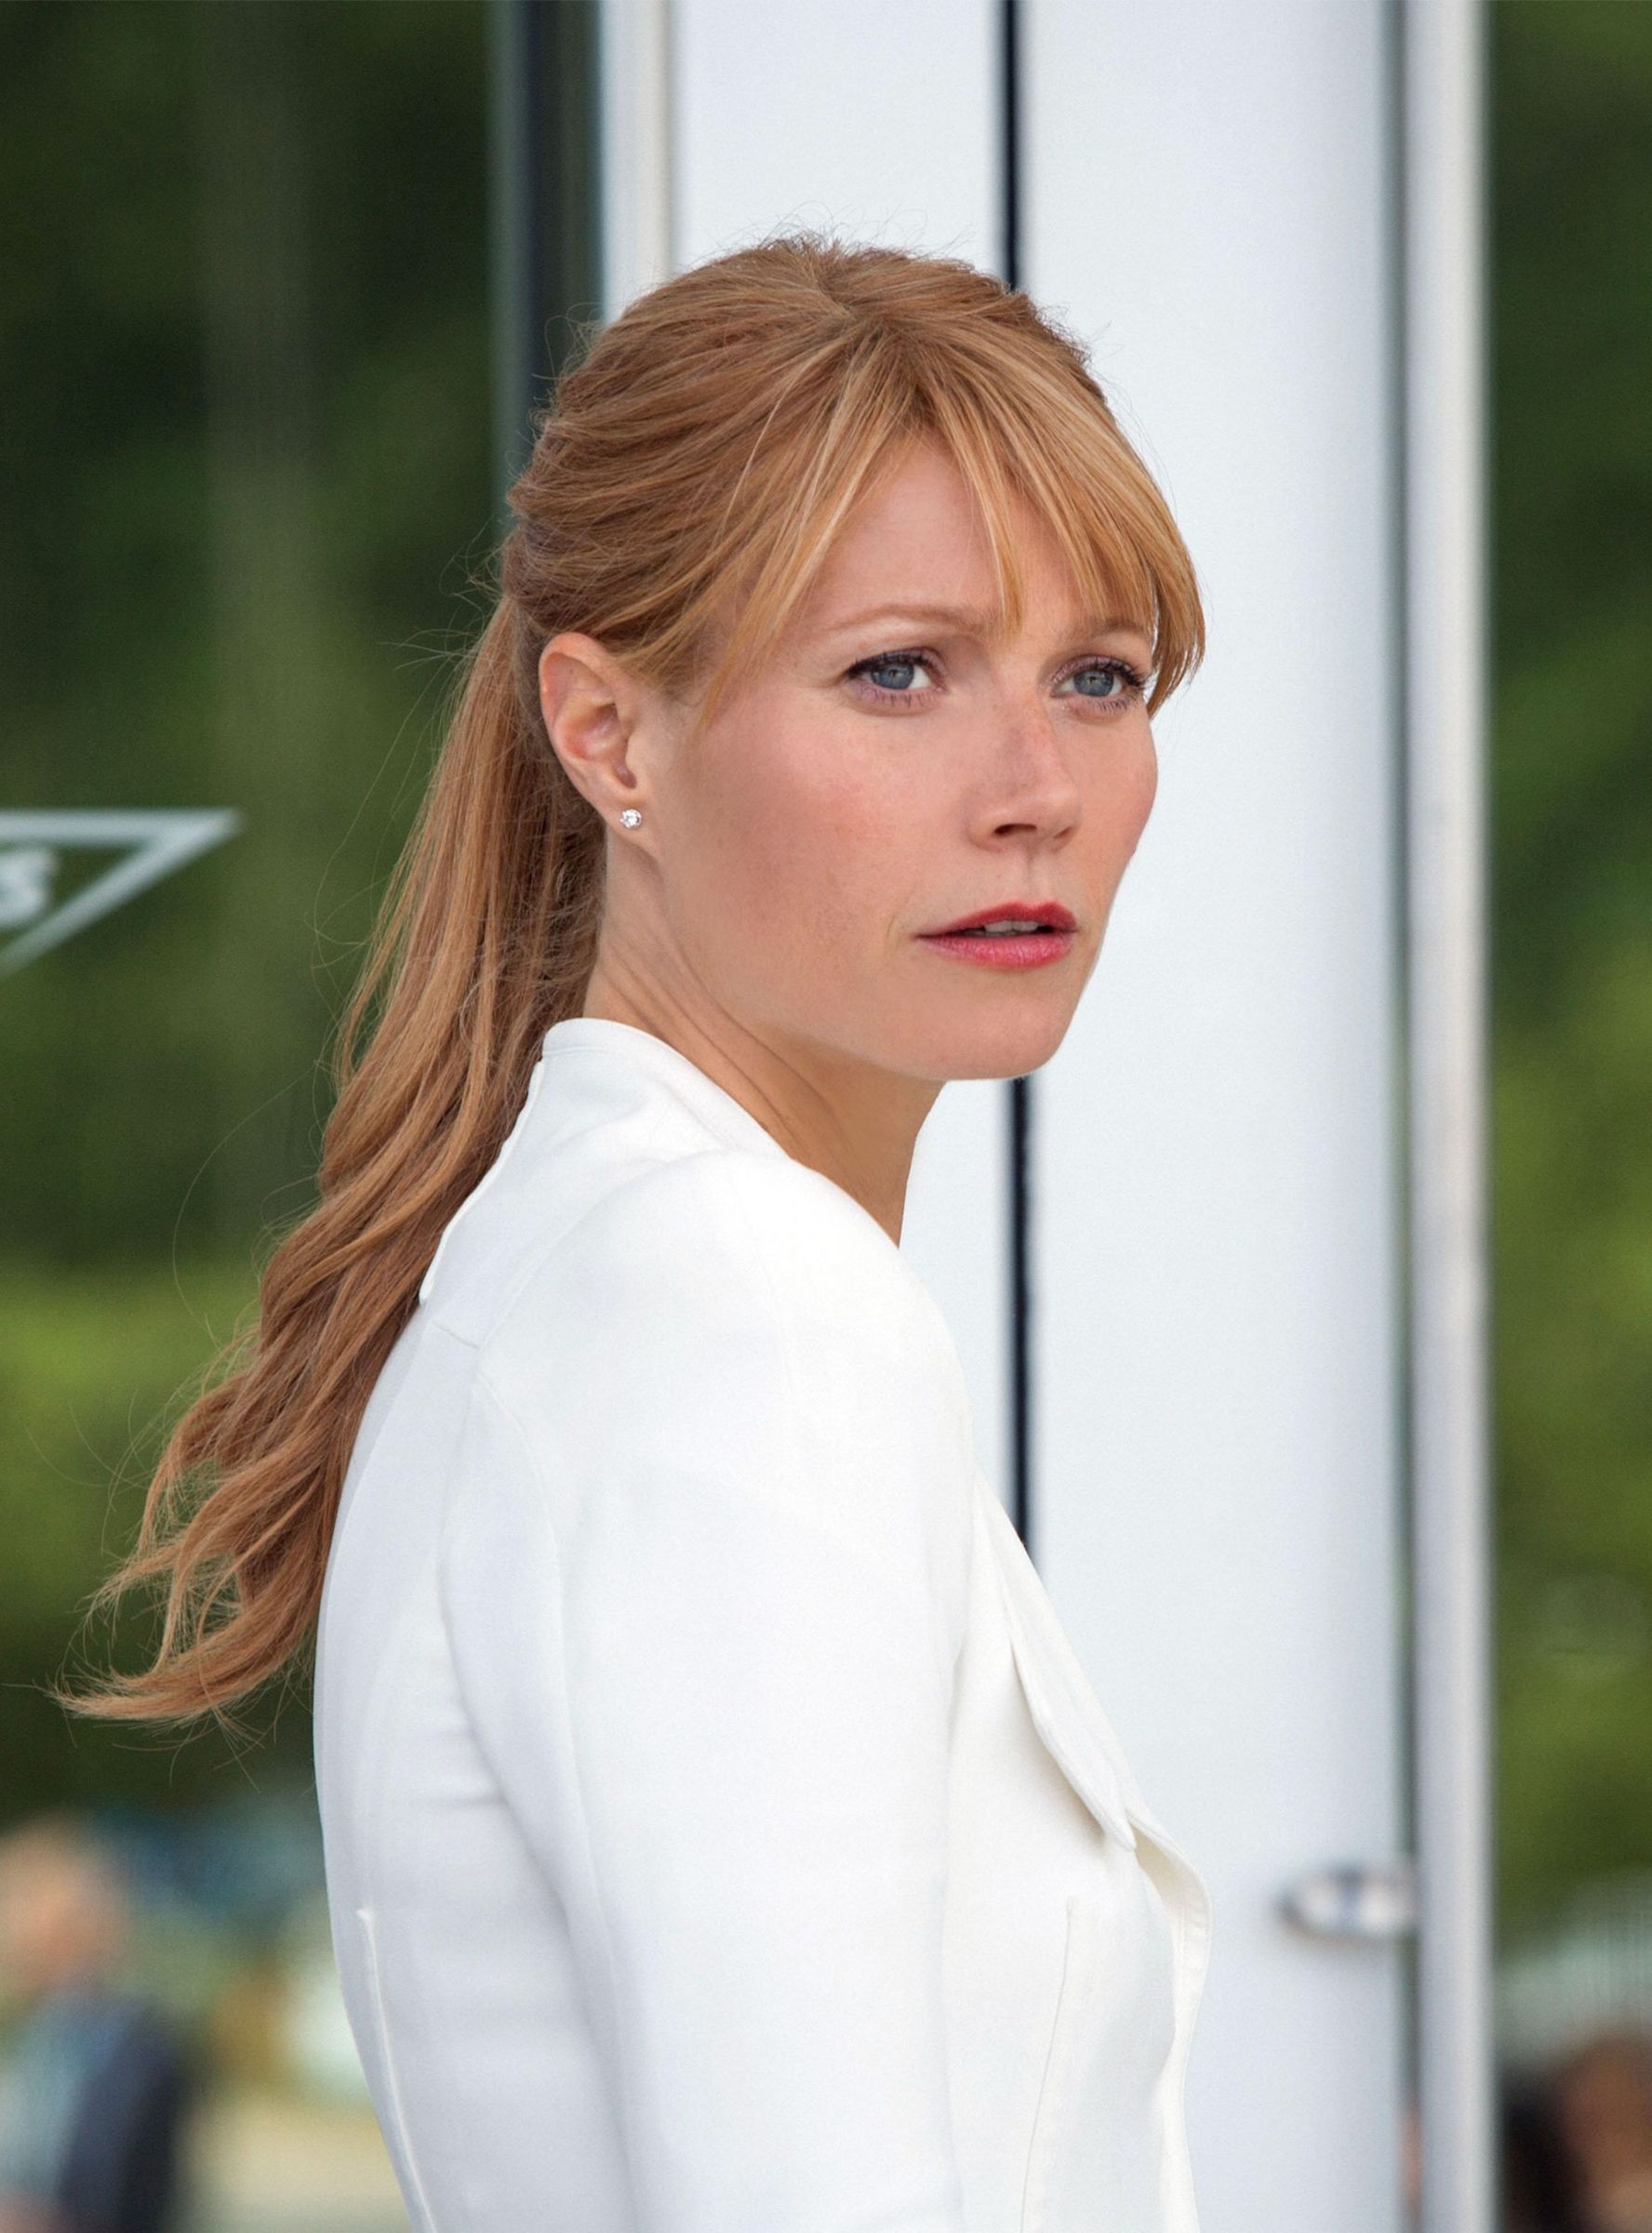 Gwyneth Paltrow, Iron Man, Movie stills, Striking hairstyles, 1780x2400 HD Handy